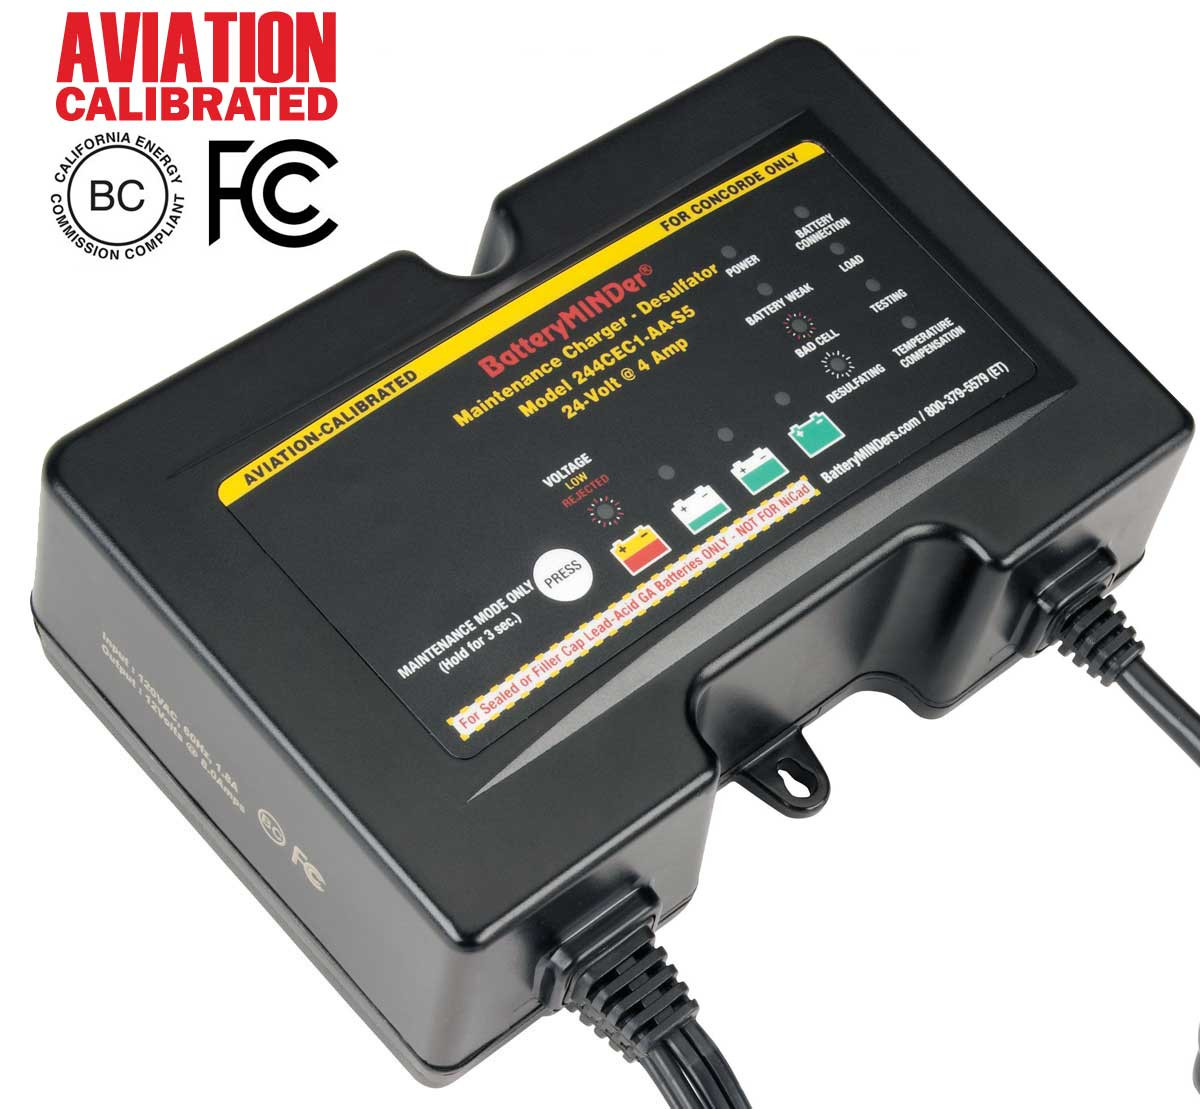 BatteryMINDer Model 244CEC2-AA-S5 24V 4 AMP CONCORDE® Aviation